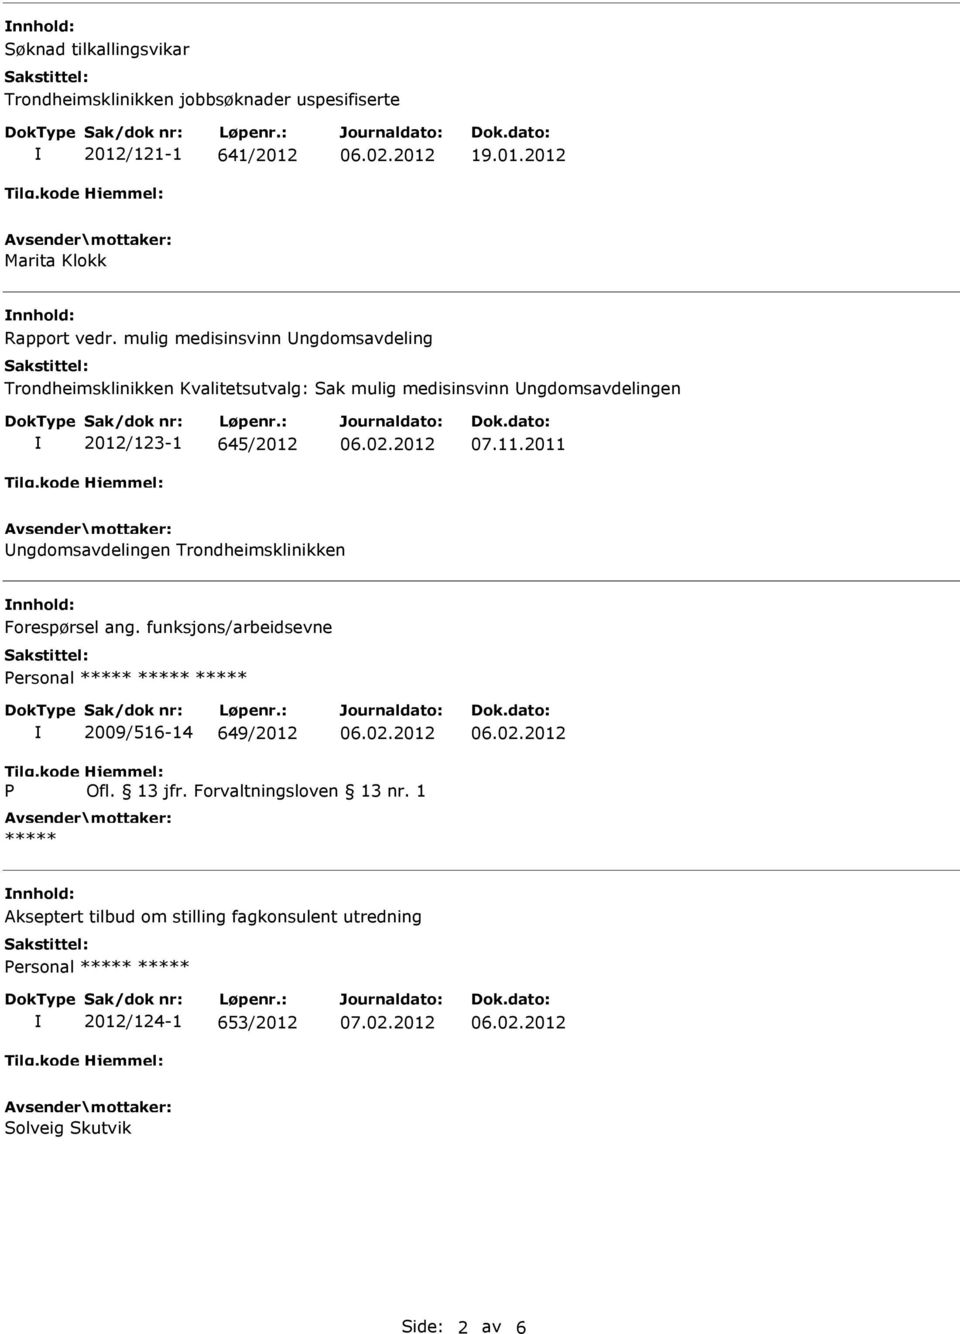 2011 ngdomsavdelingen Trondheimsklinikken nnhold: Forespørsel ang. funksjons/arbeidsevne ersonal 2009/516-14 649/2012 Ofl. 13 jfr.